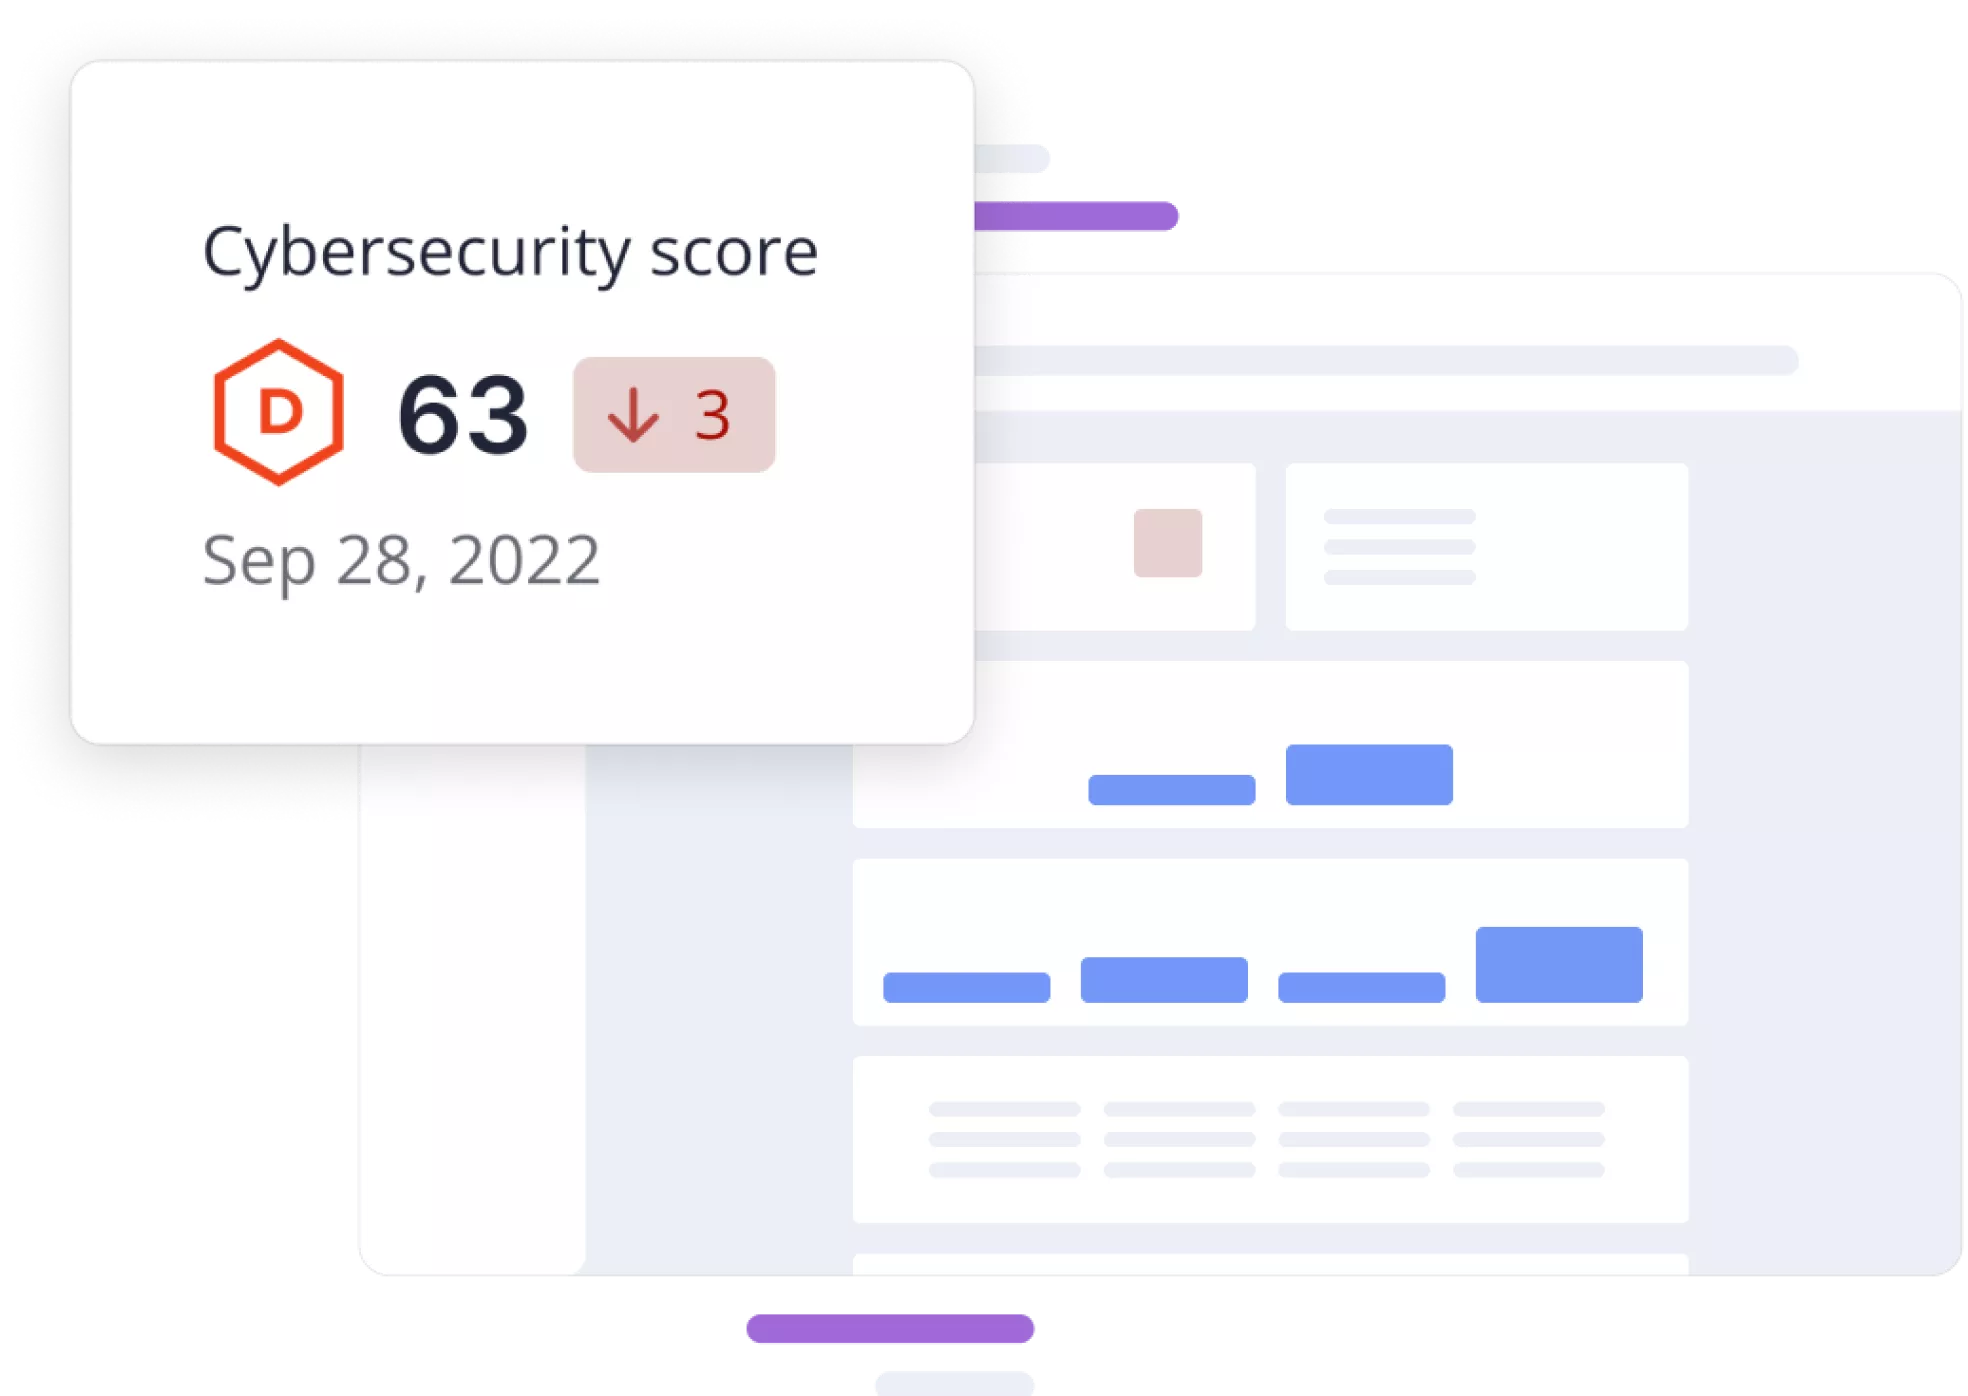 Tigo Paraguay Cybersecurity score